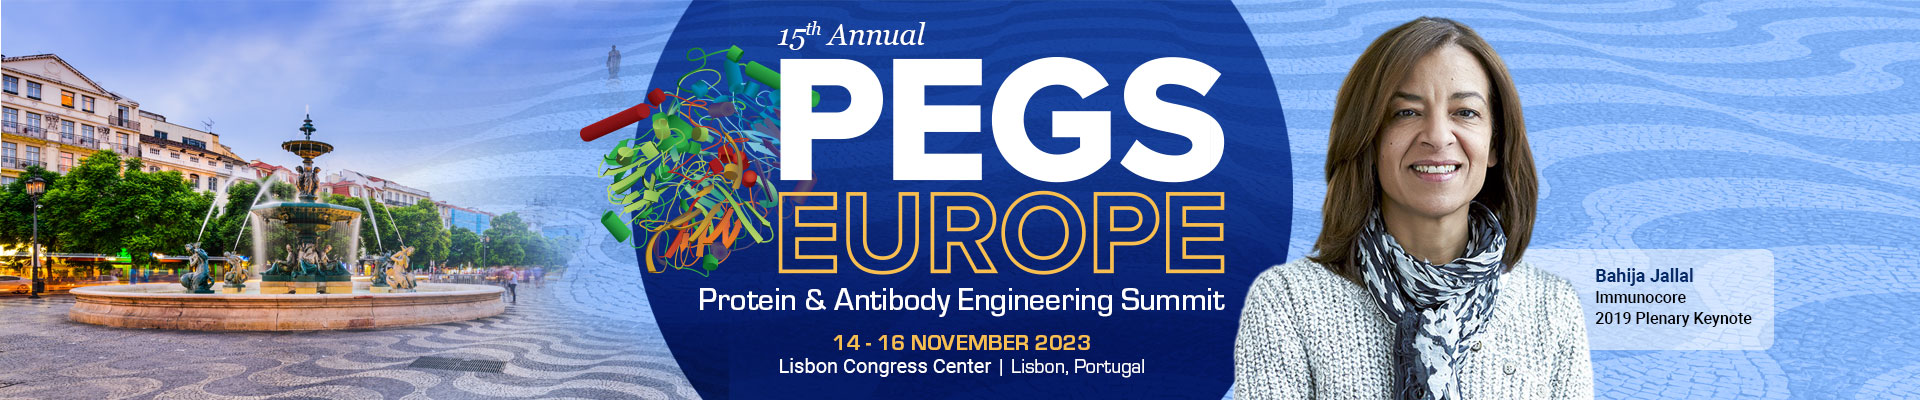 PEGS Summit Europe - 2023